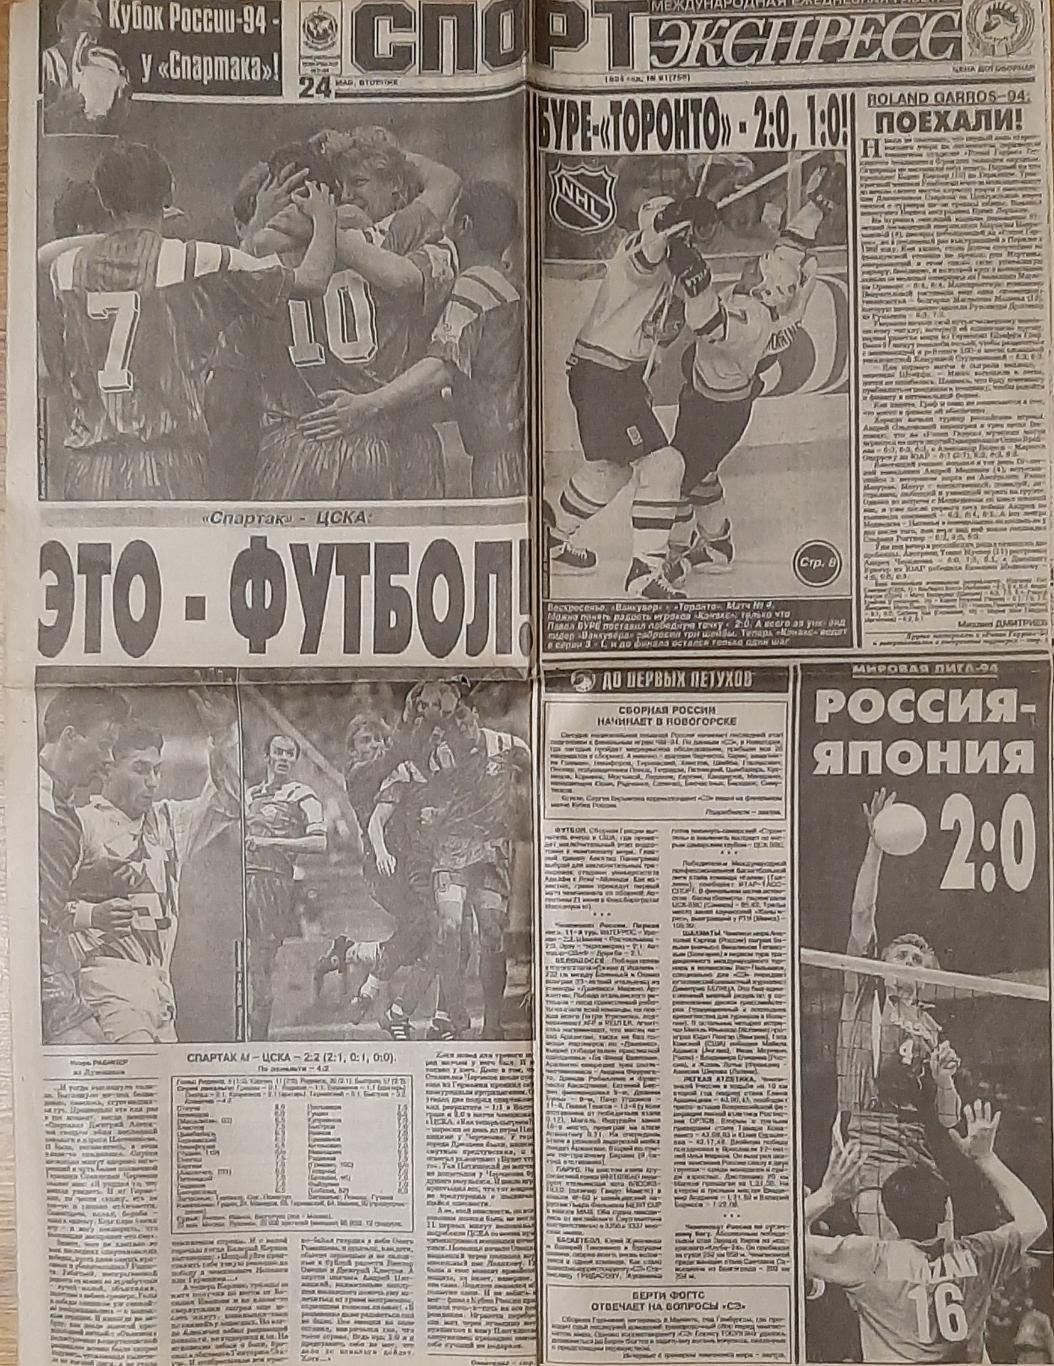 Вирізка з газети Спорт Экспресс #91 (24.05.1994)